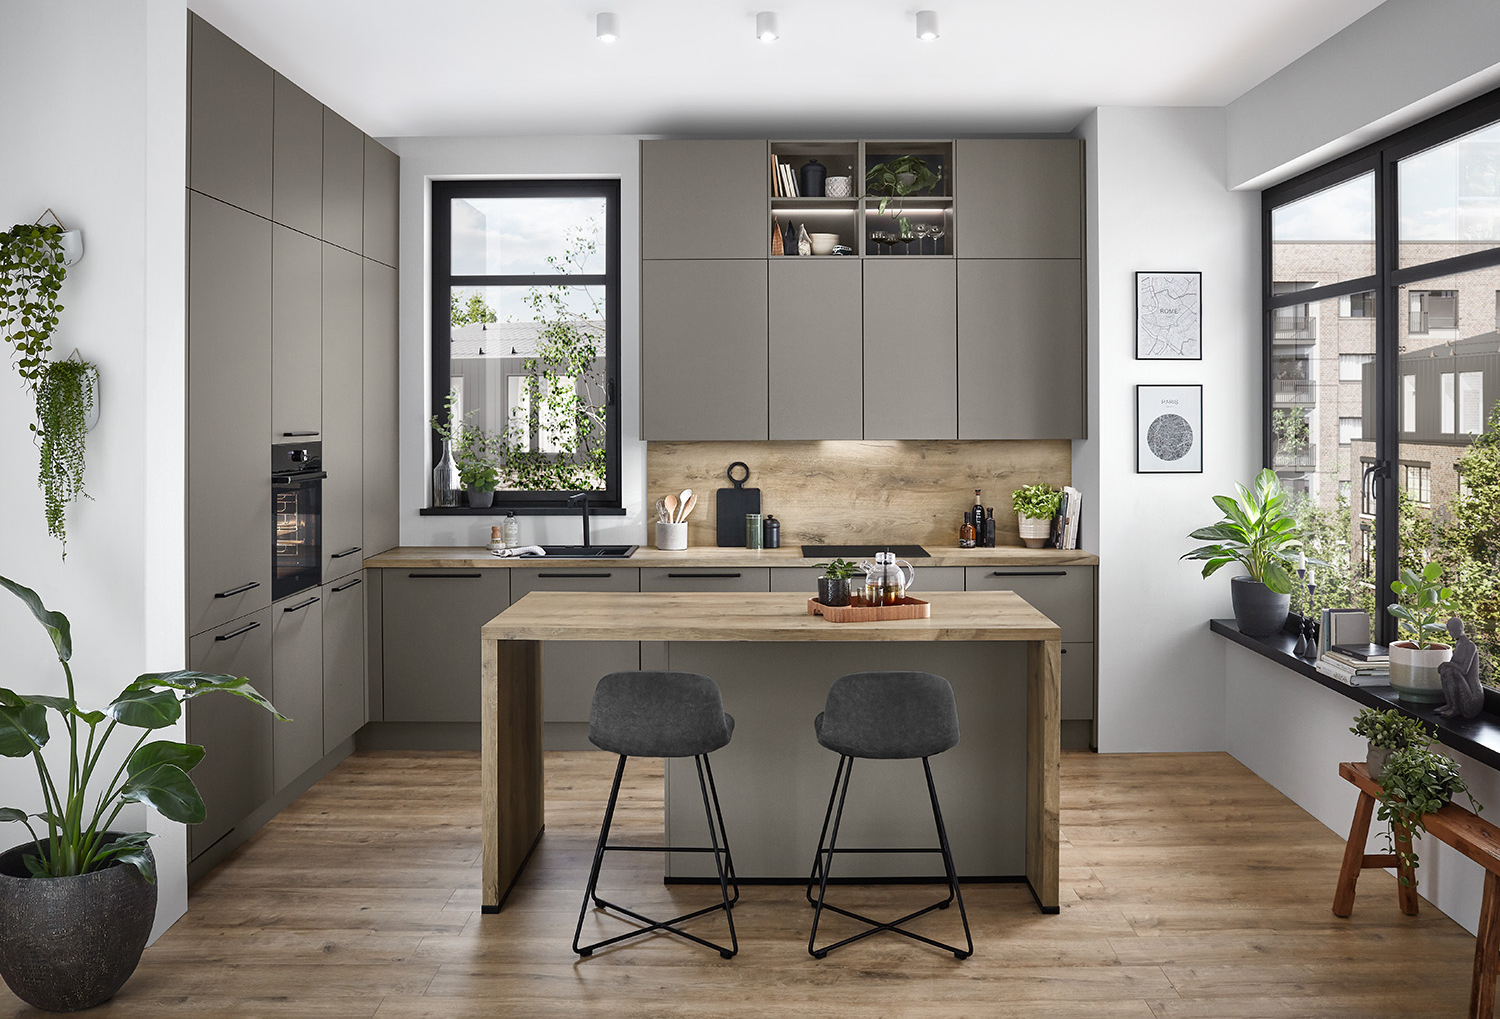 Moderne Küchengestaltung mit eleganten grauen Schränken, Holzakzenten, integrierten Geräten und einer zentralen Insel mit Hockern, beleuchtet von natürlichem Licht durch große Fenster.